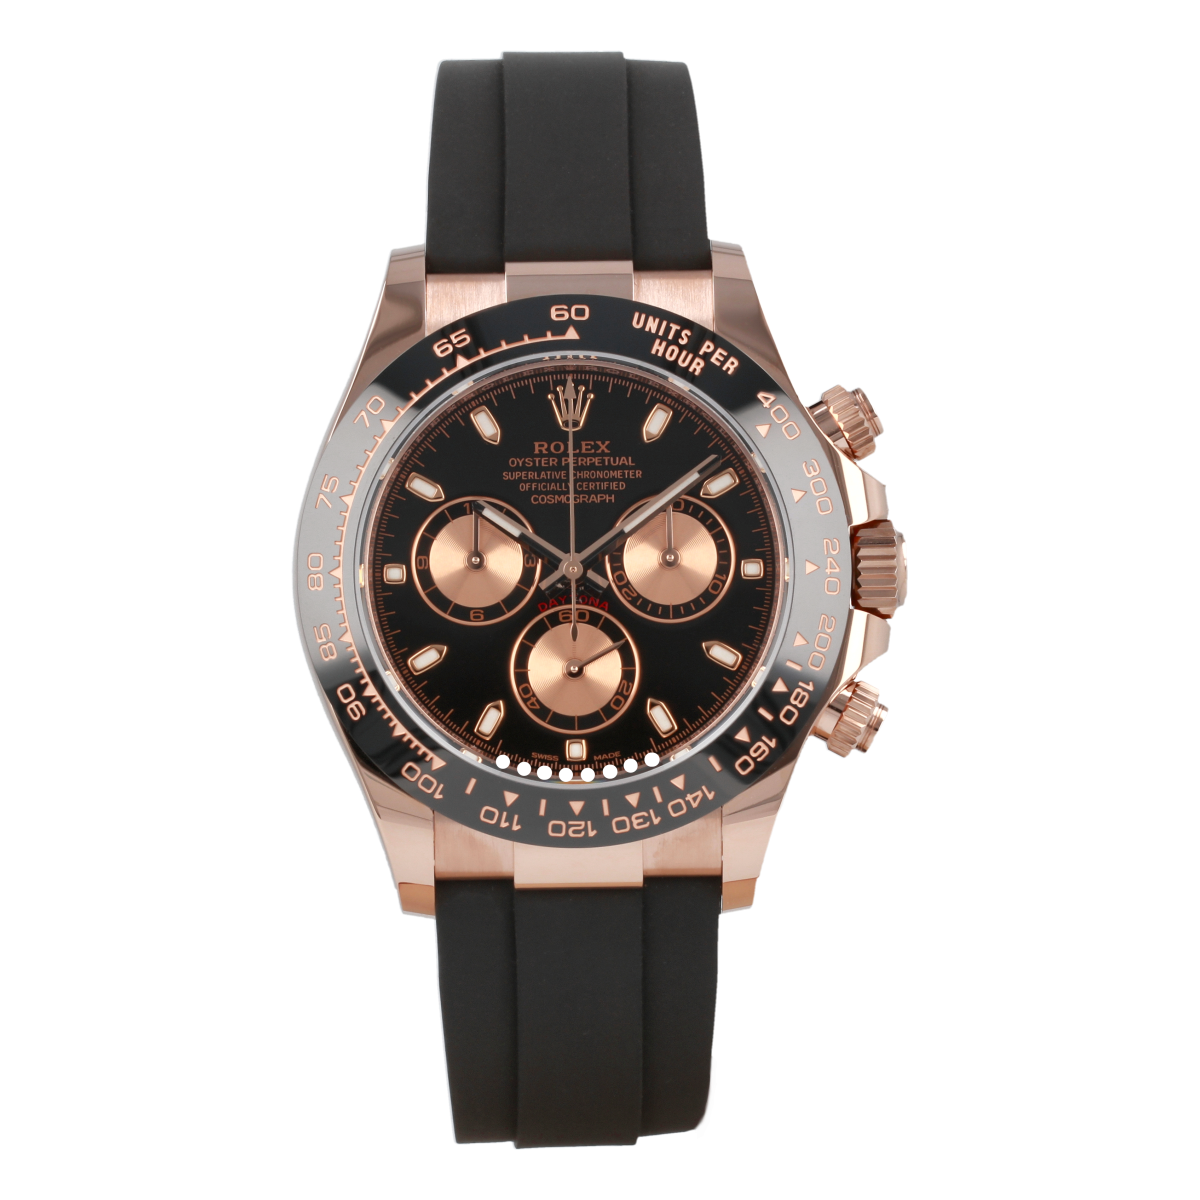 Rolex Cosmograph Daytona 116515LN Oro Everose Oysterflex *Nuevo a Estrenar* | Comprar reloj Rolex de segunda mano